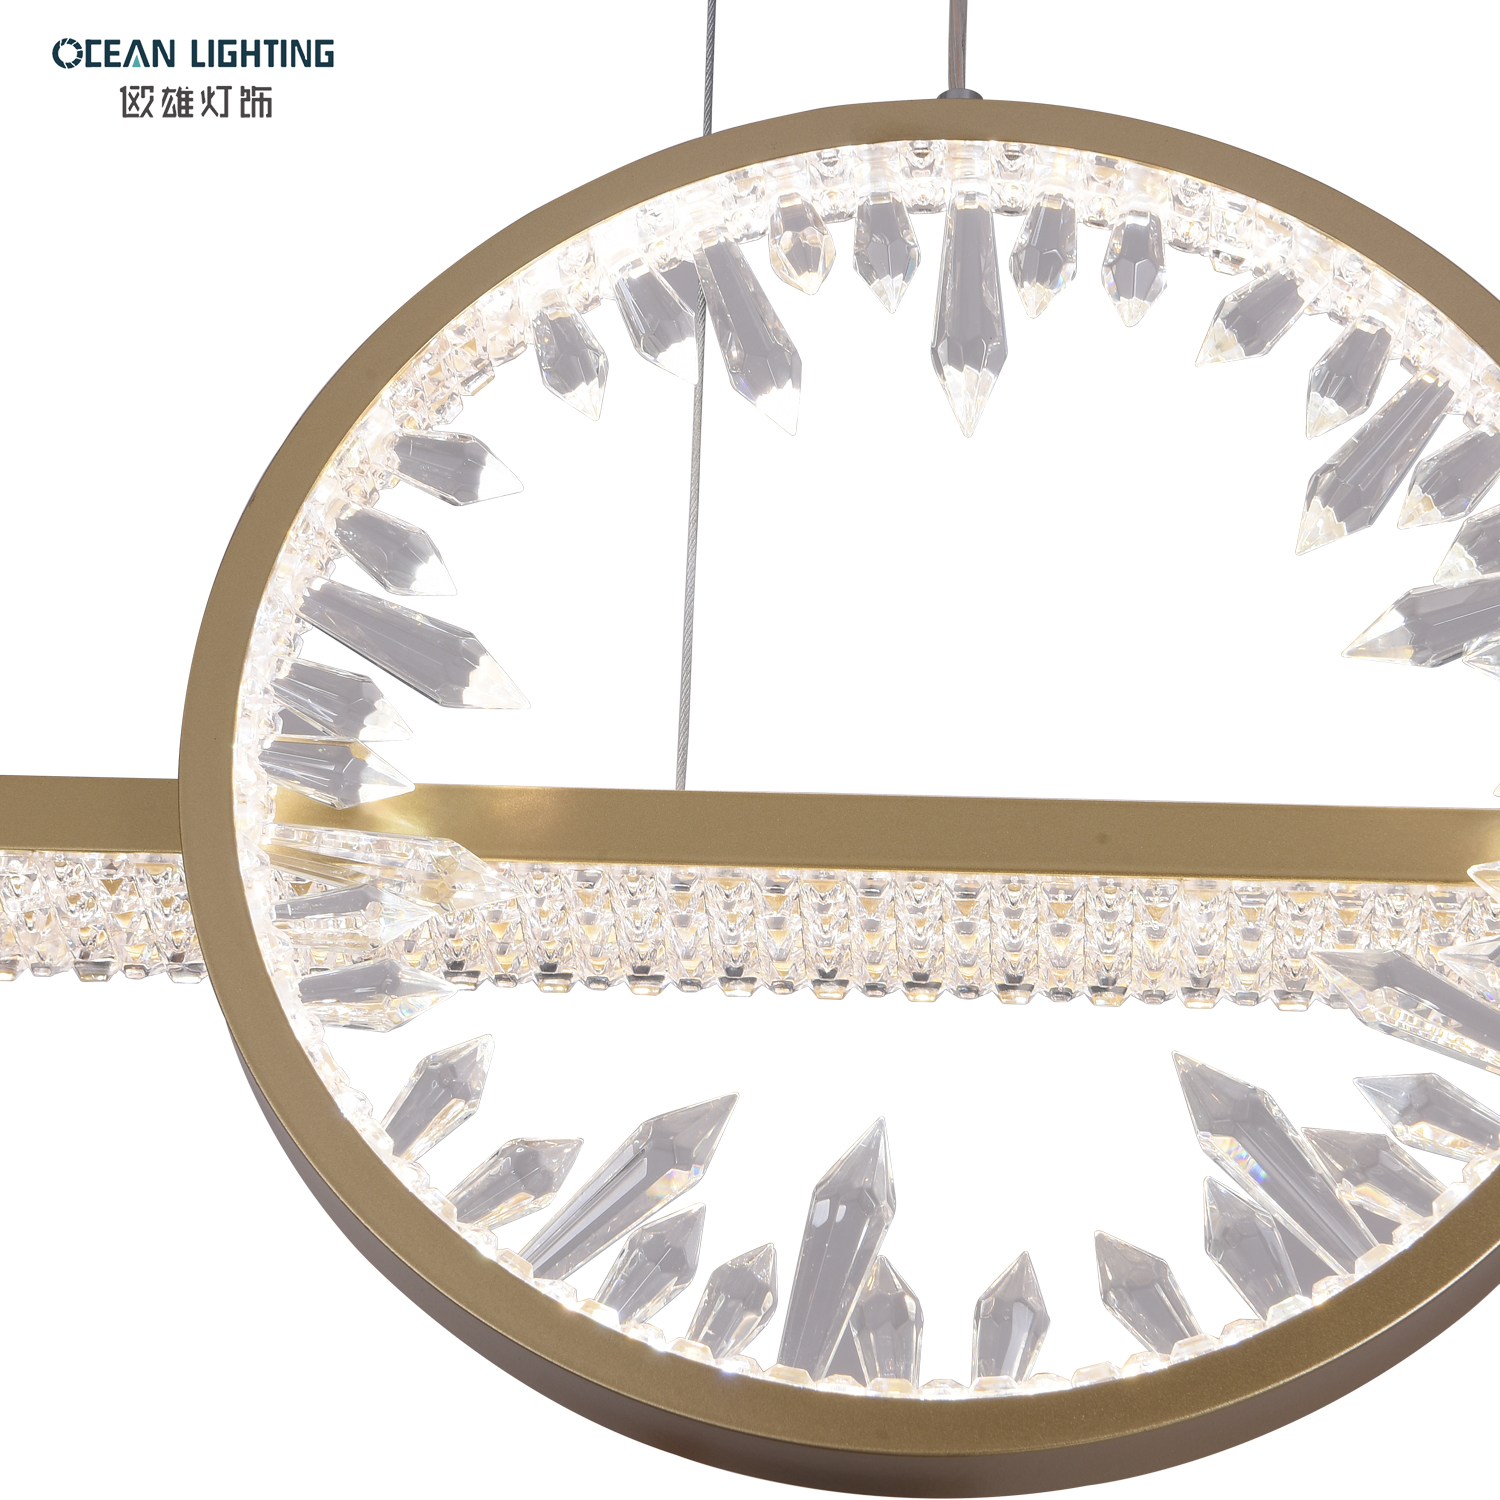 OCEAN LAMP Pendant light LED luxury modern crystal chandelier for kitchen island